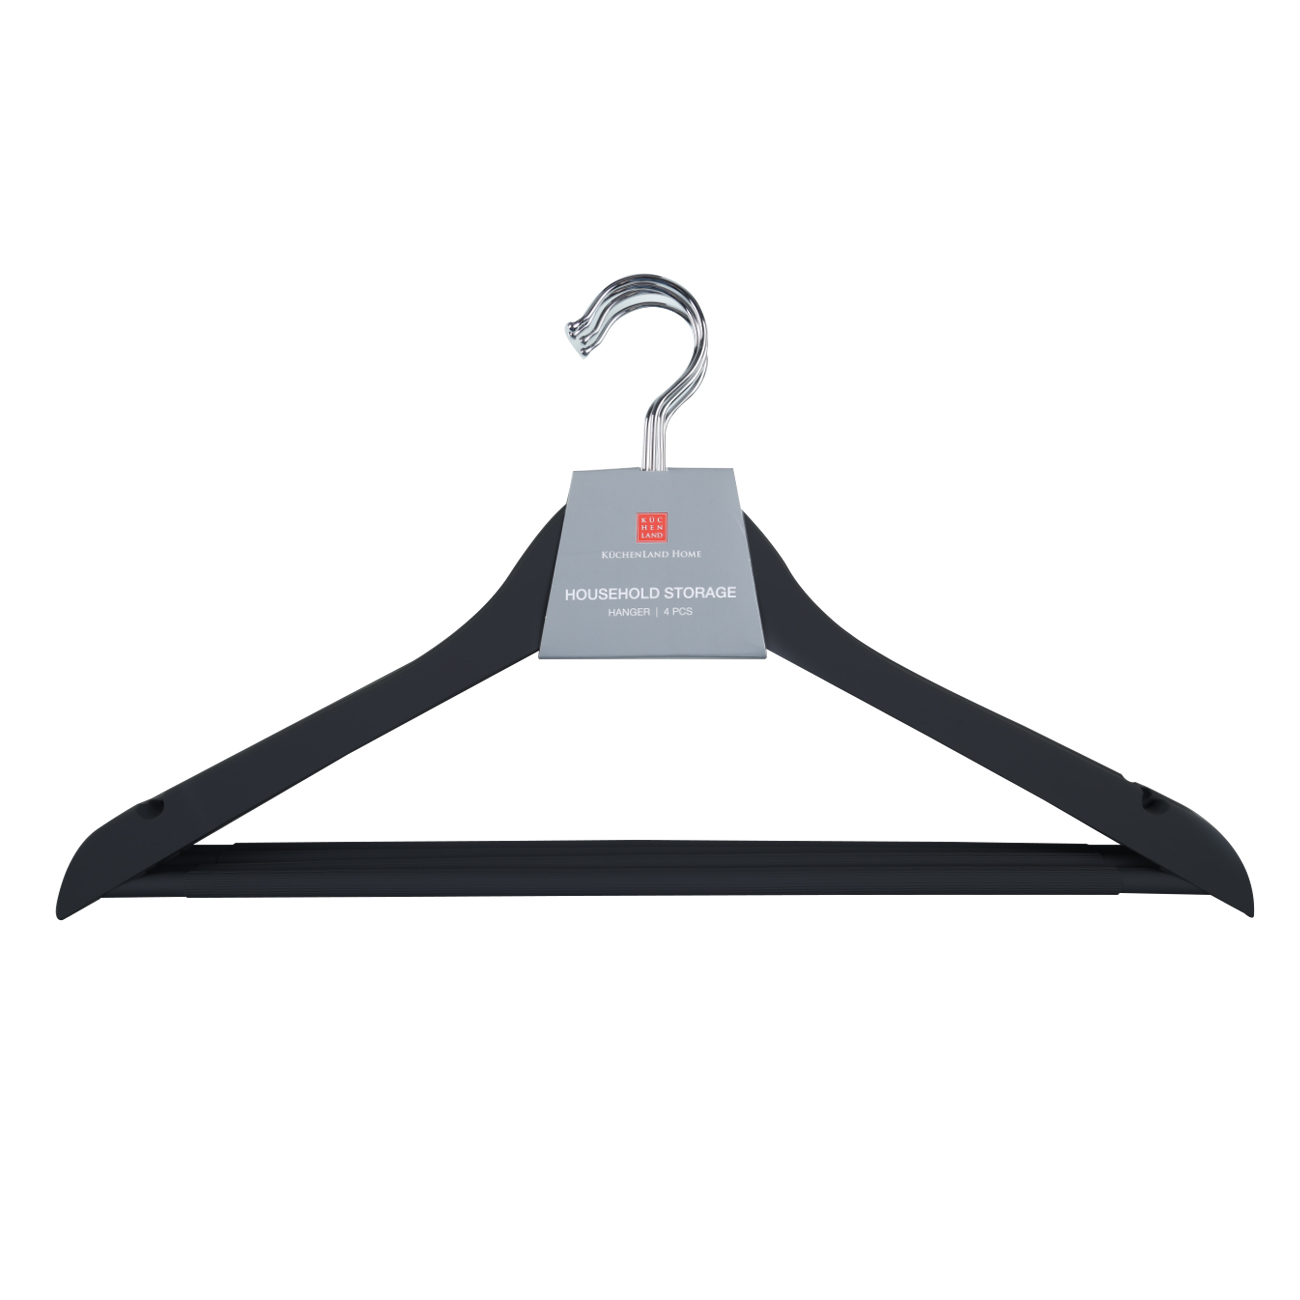 Hanger, 44 cm, 4 pcs, plastic coated, black, Fun house  изображение № 2